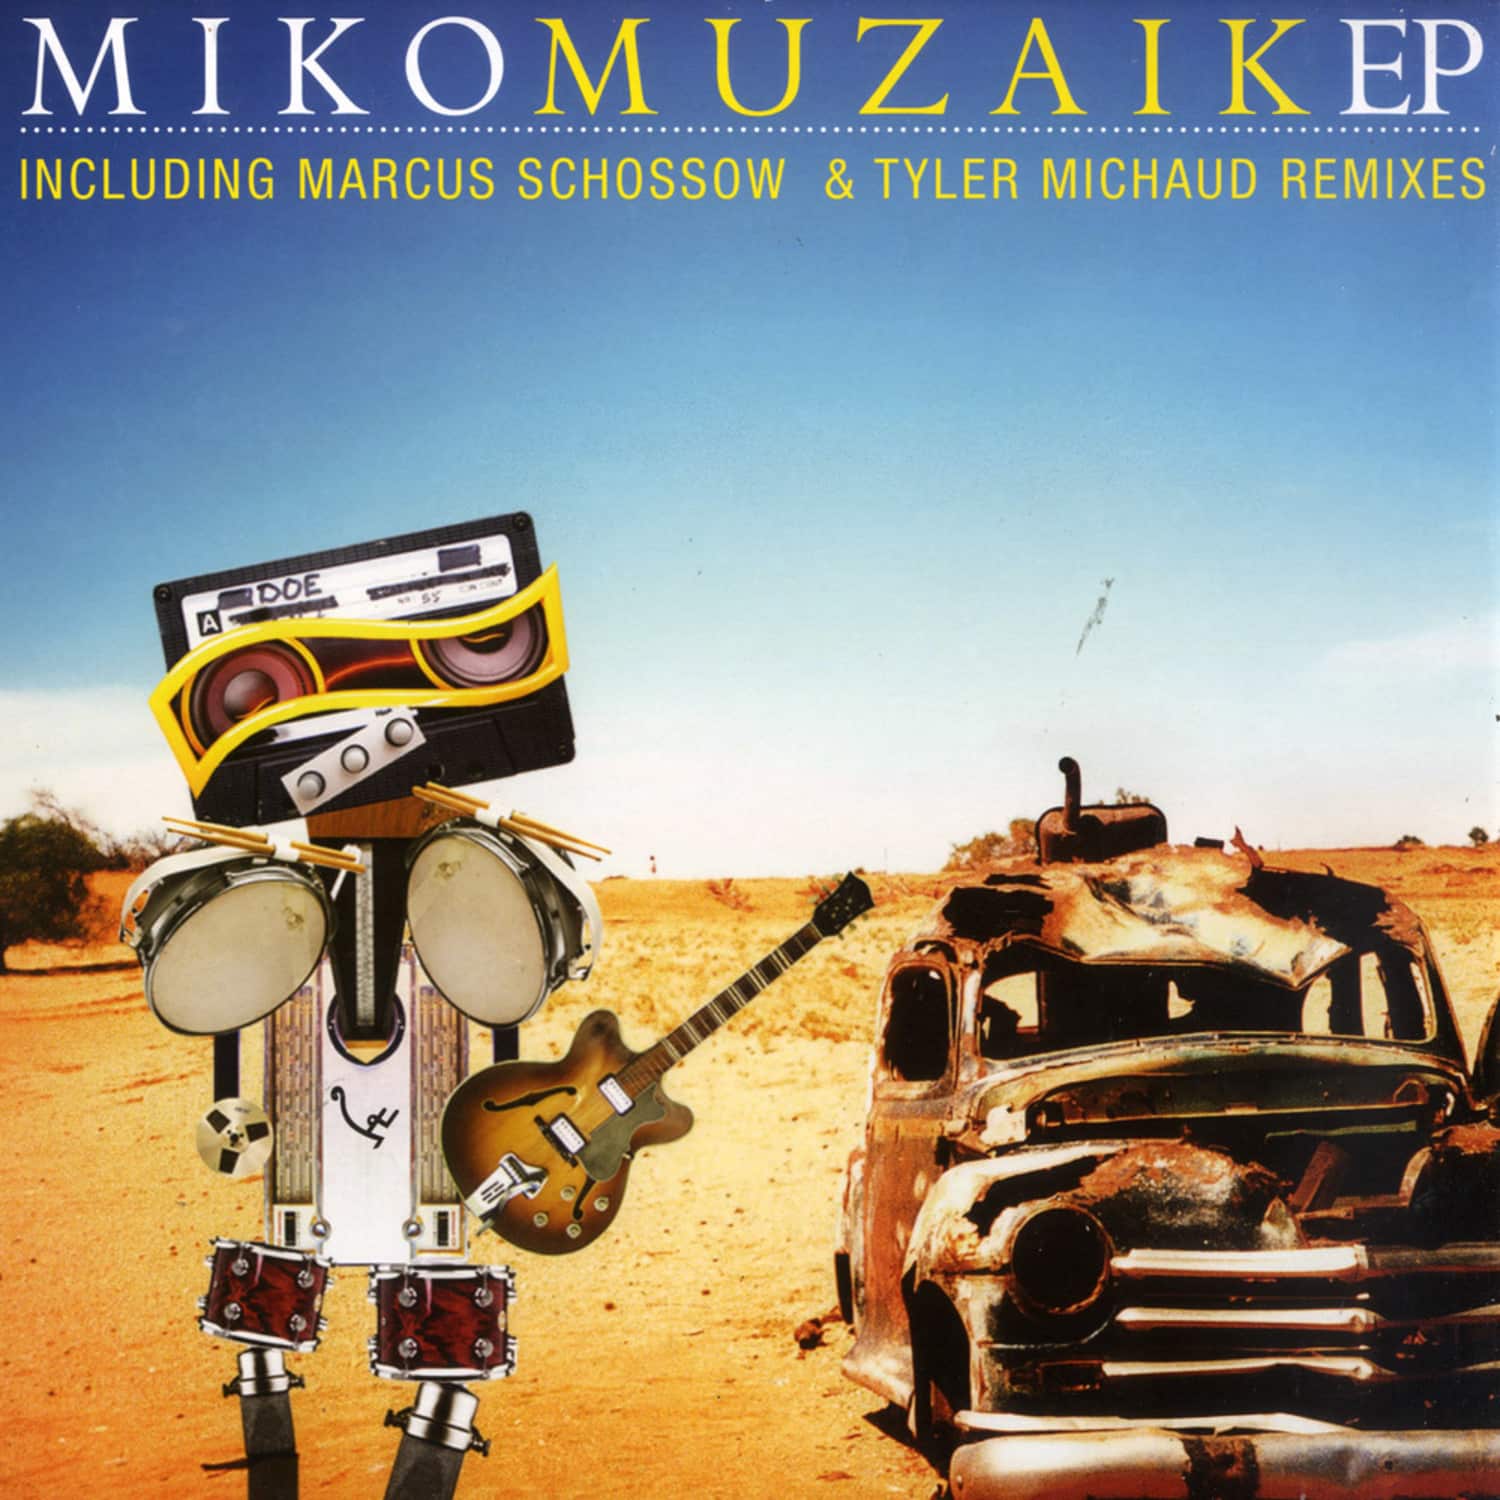 Miko - MUZAIK EP